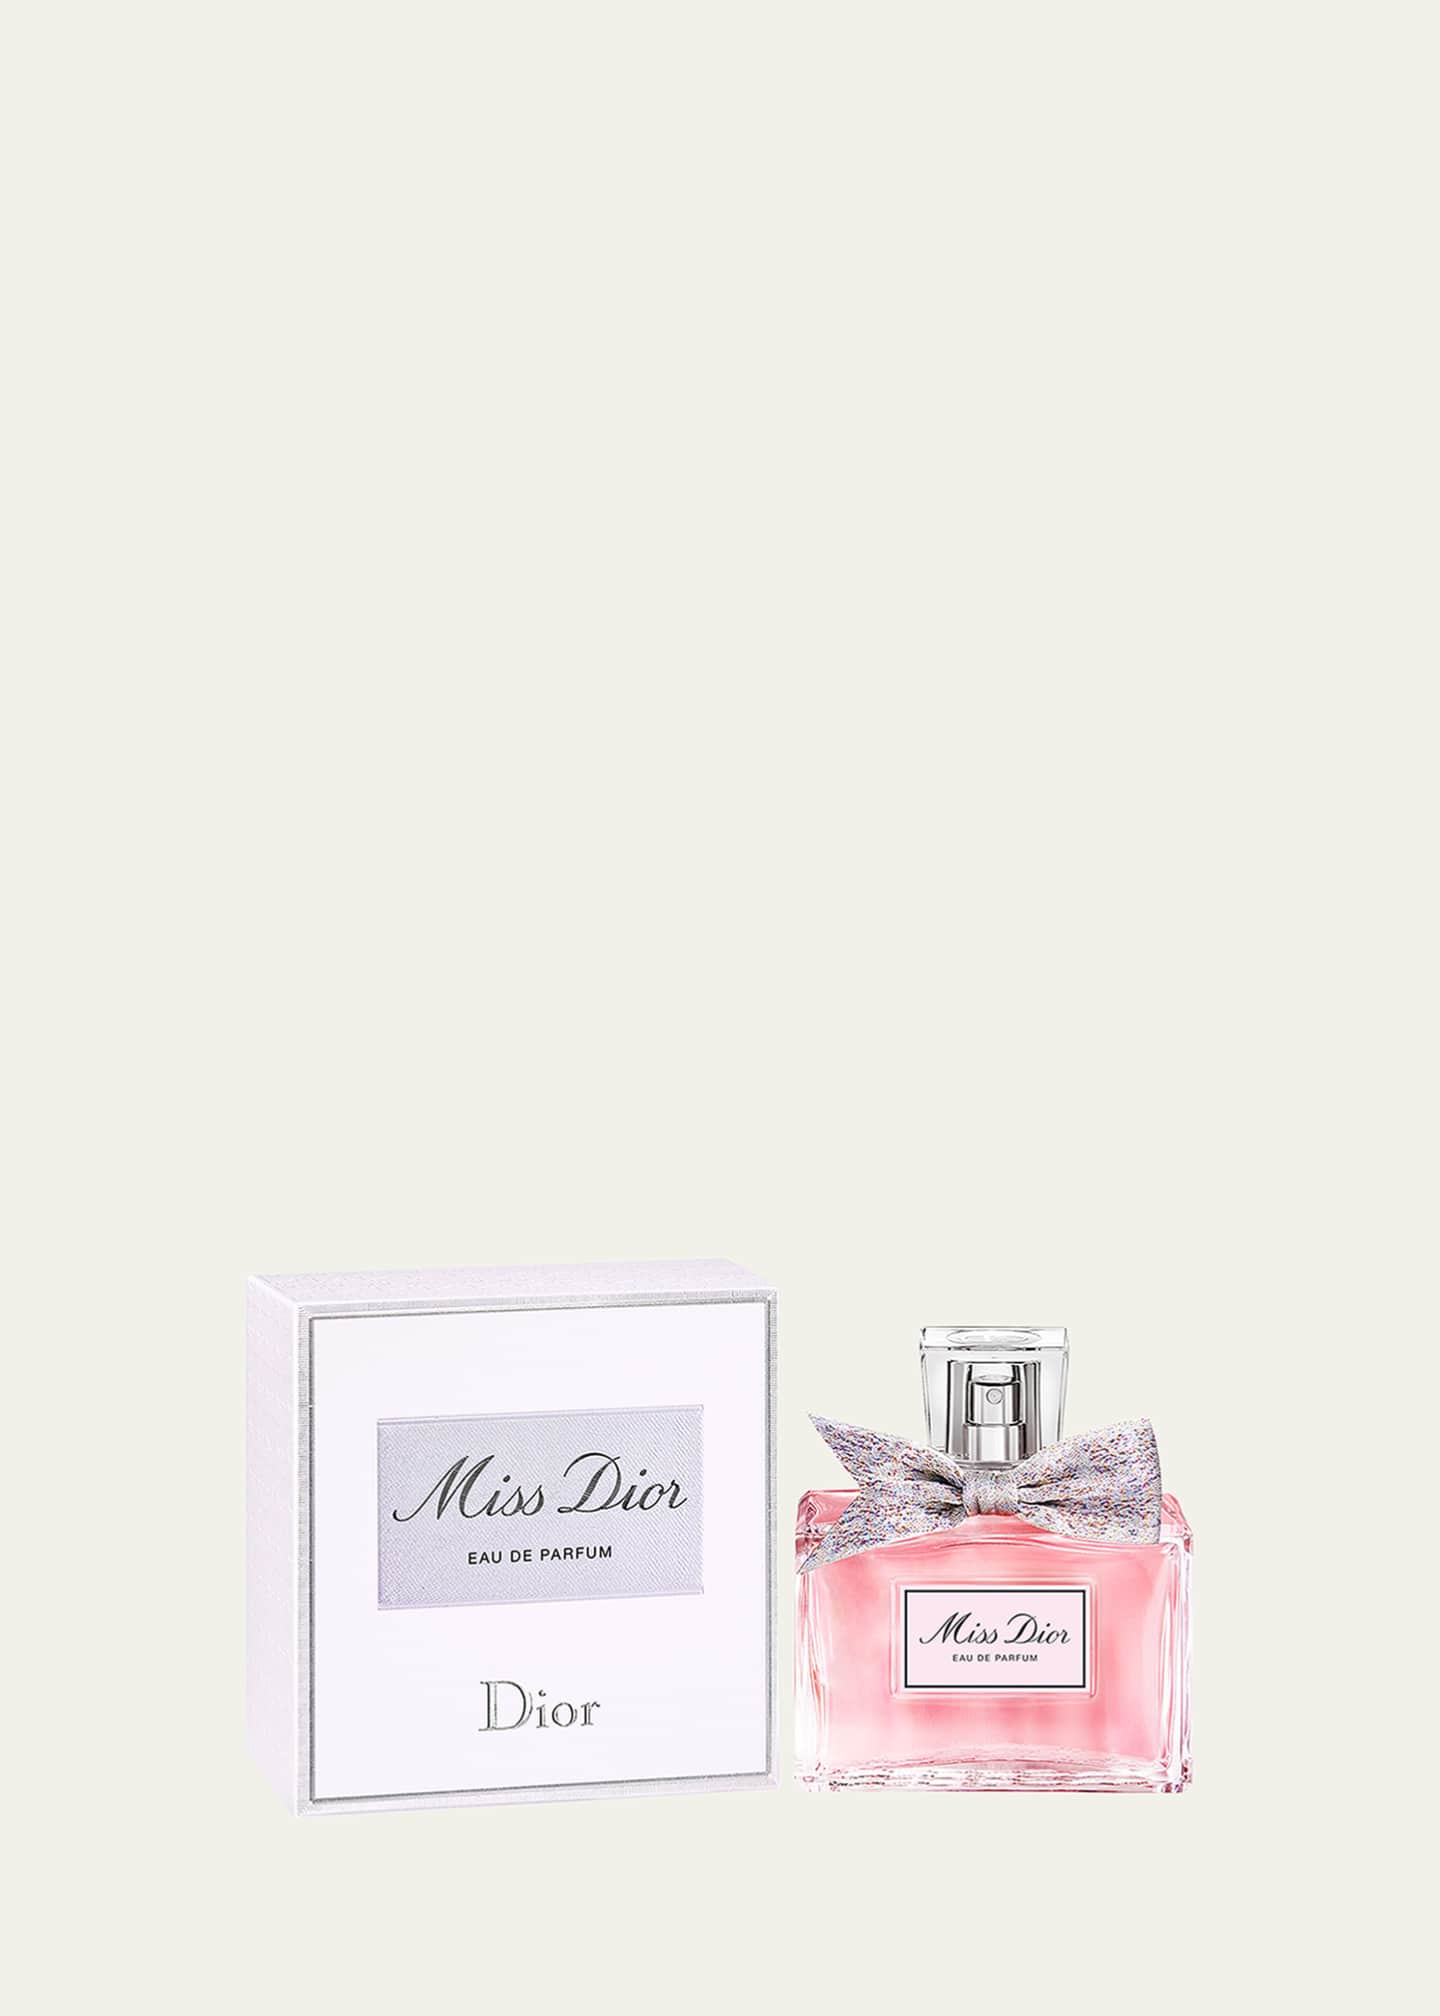 Miss Dior by Christan Dior For Woman Eau de Parfum 1.7 - Ounce